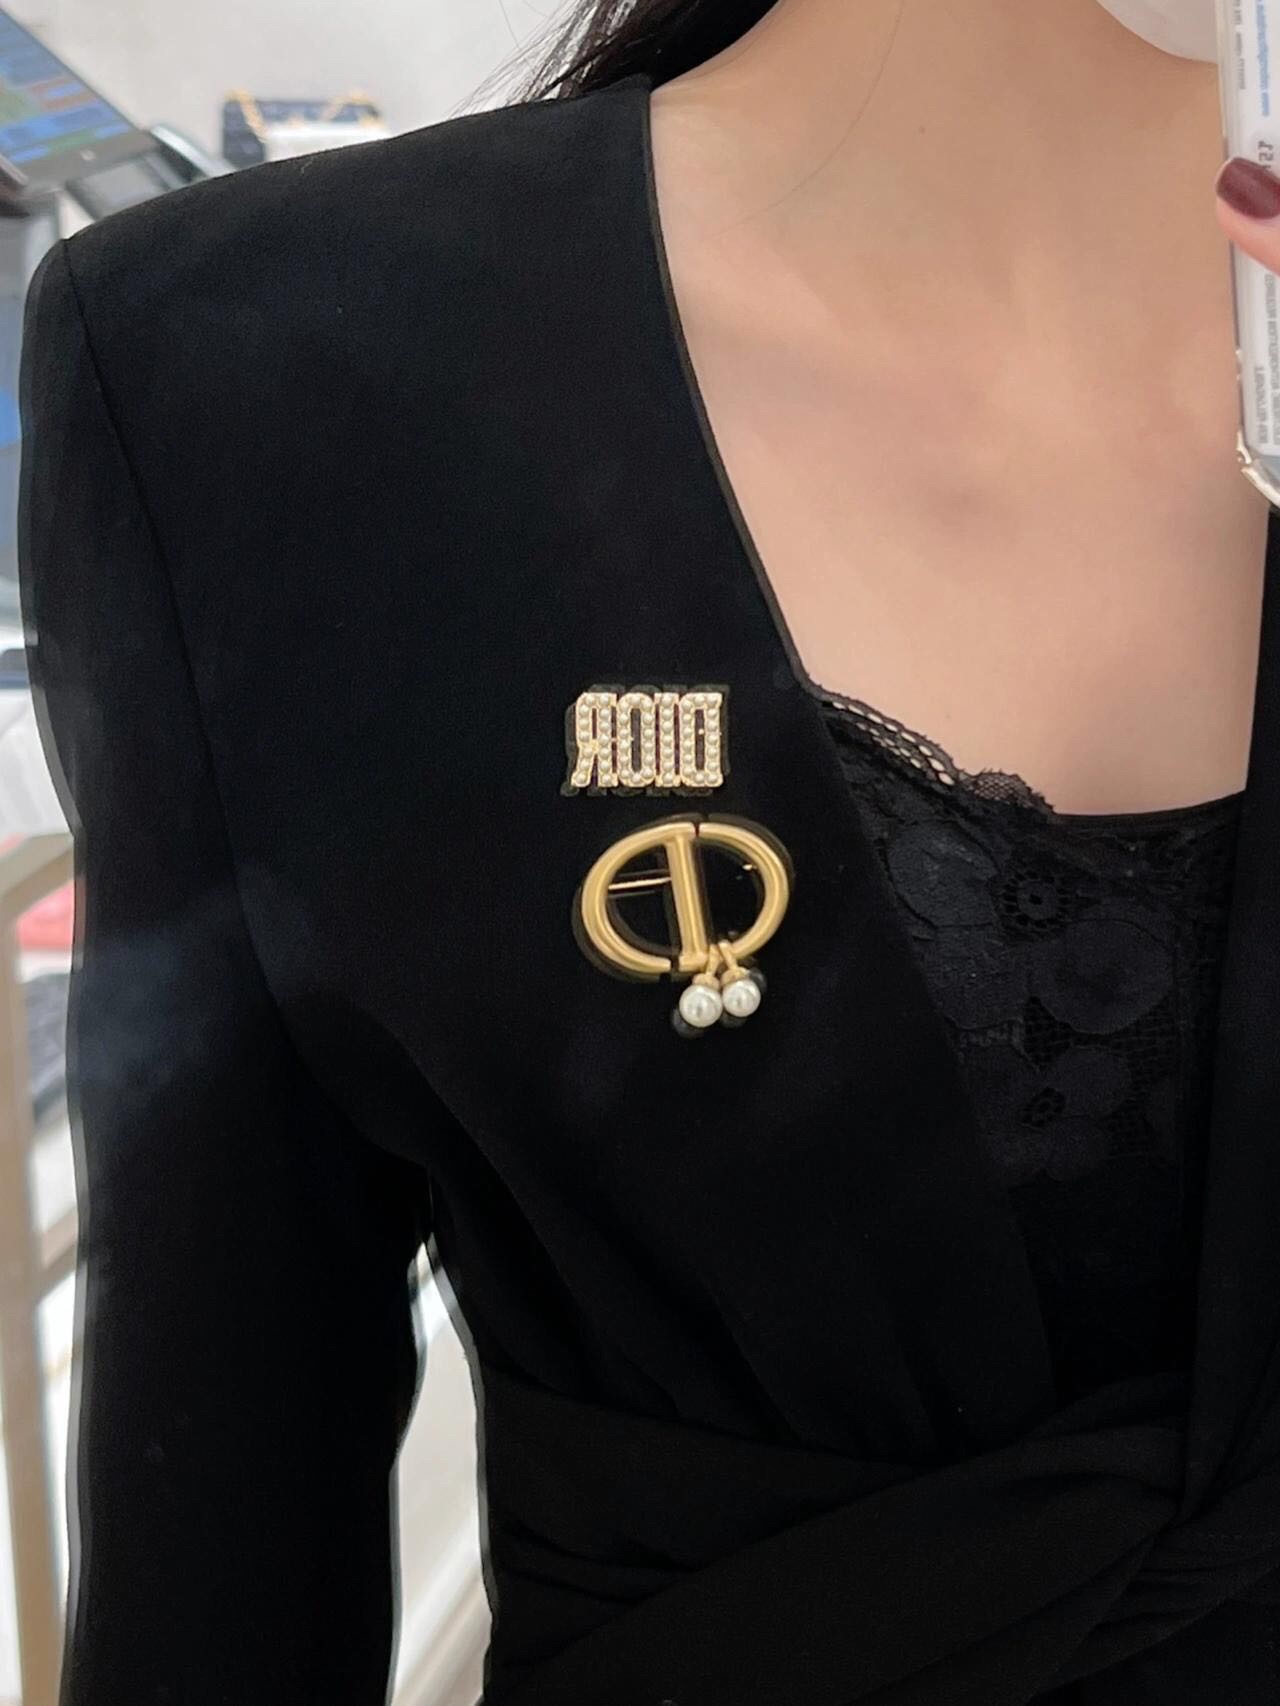 官网w4800量大咨询客FuJADIOR珍珠发夹超美超美的brooch上边颗颗施H洛珍珠特别的美特别有设